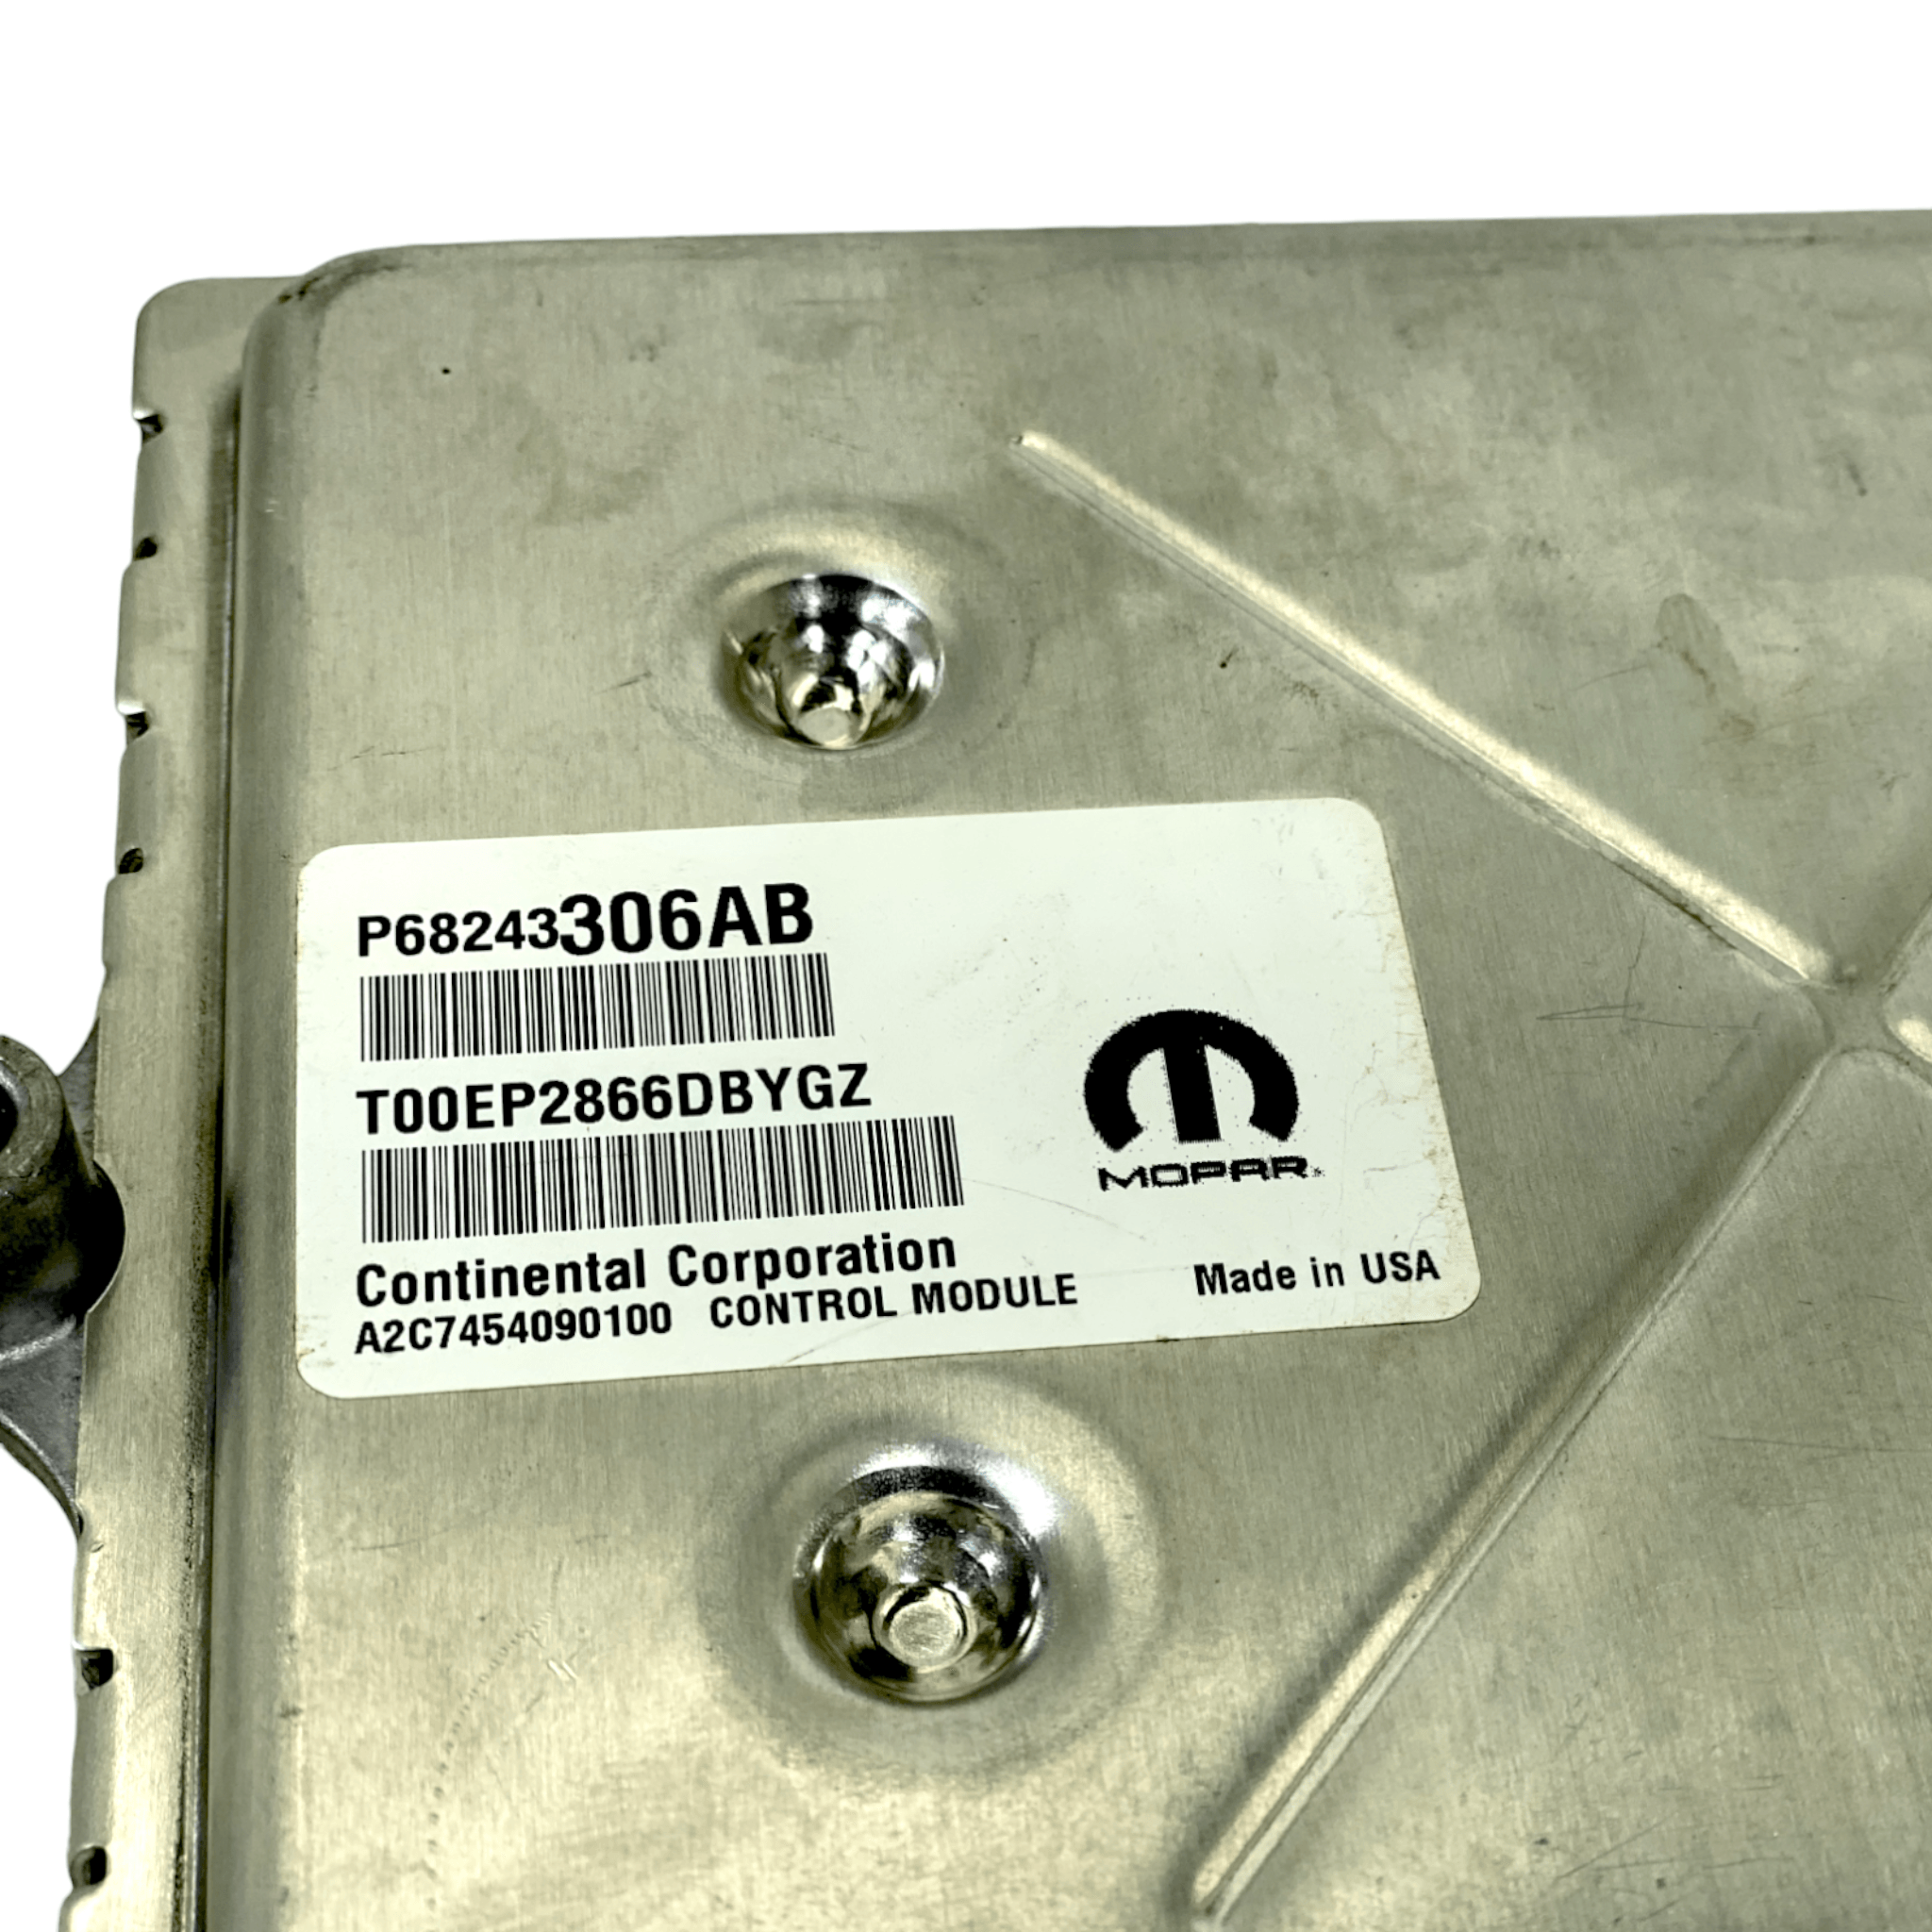 68243306Ab Genuine Mopar Pcm Powertrain Control Module For Dodge Ram - ADVANCED TRUCK PARTS